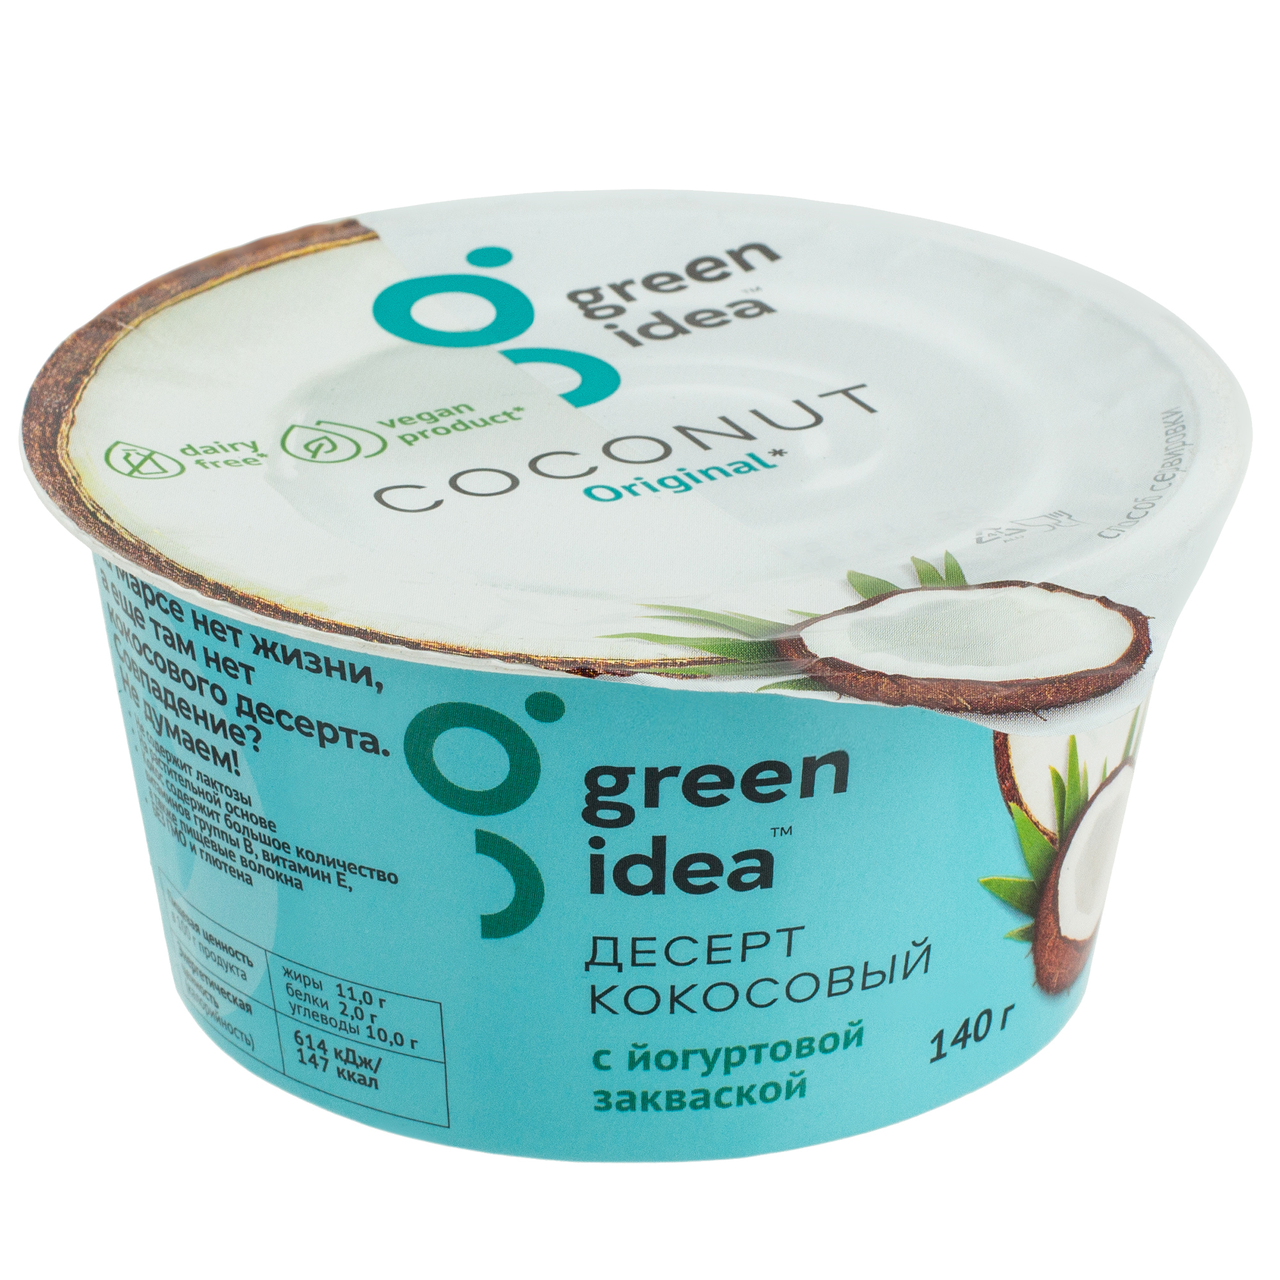 Десерт кокосовый с йогуртовой закваской 140 (6) Green Idea